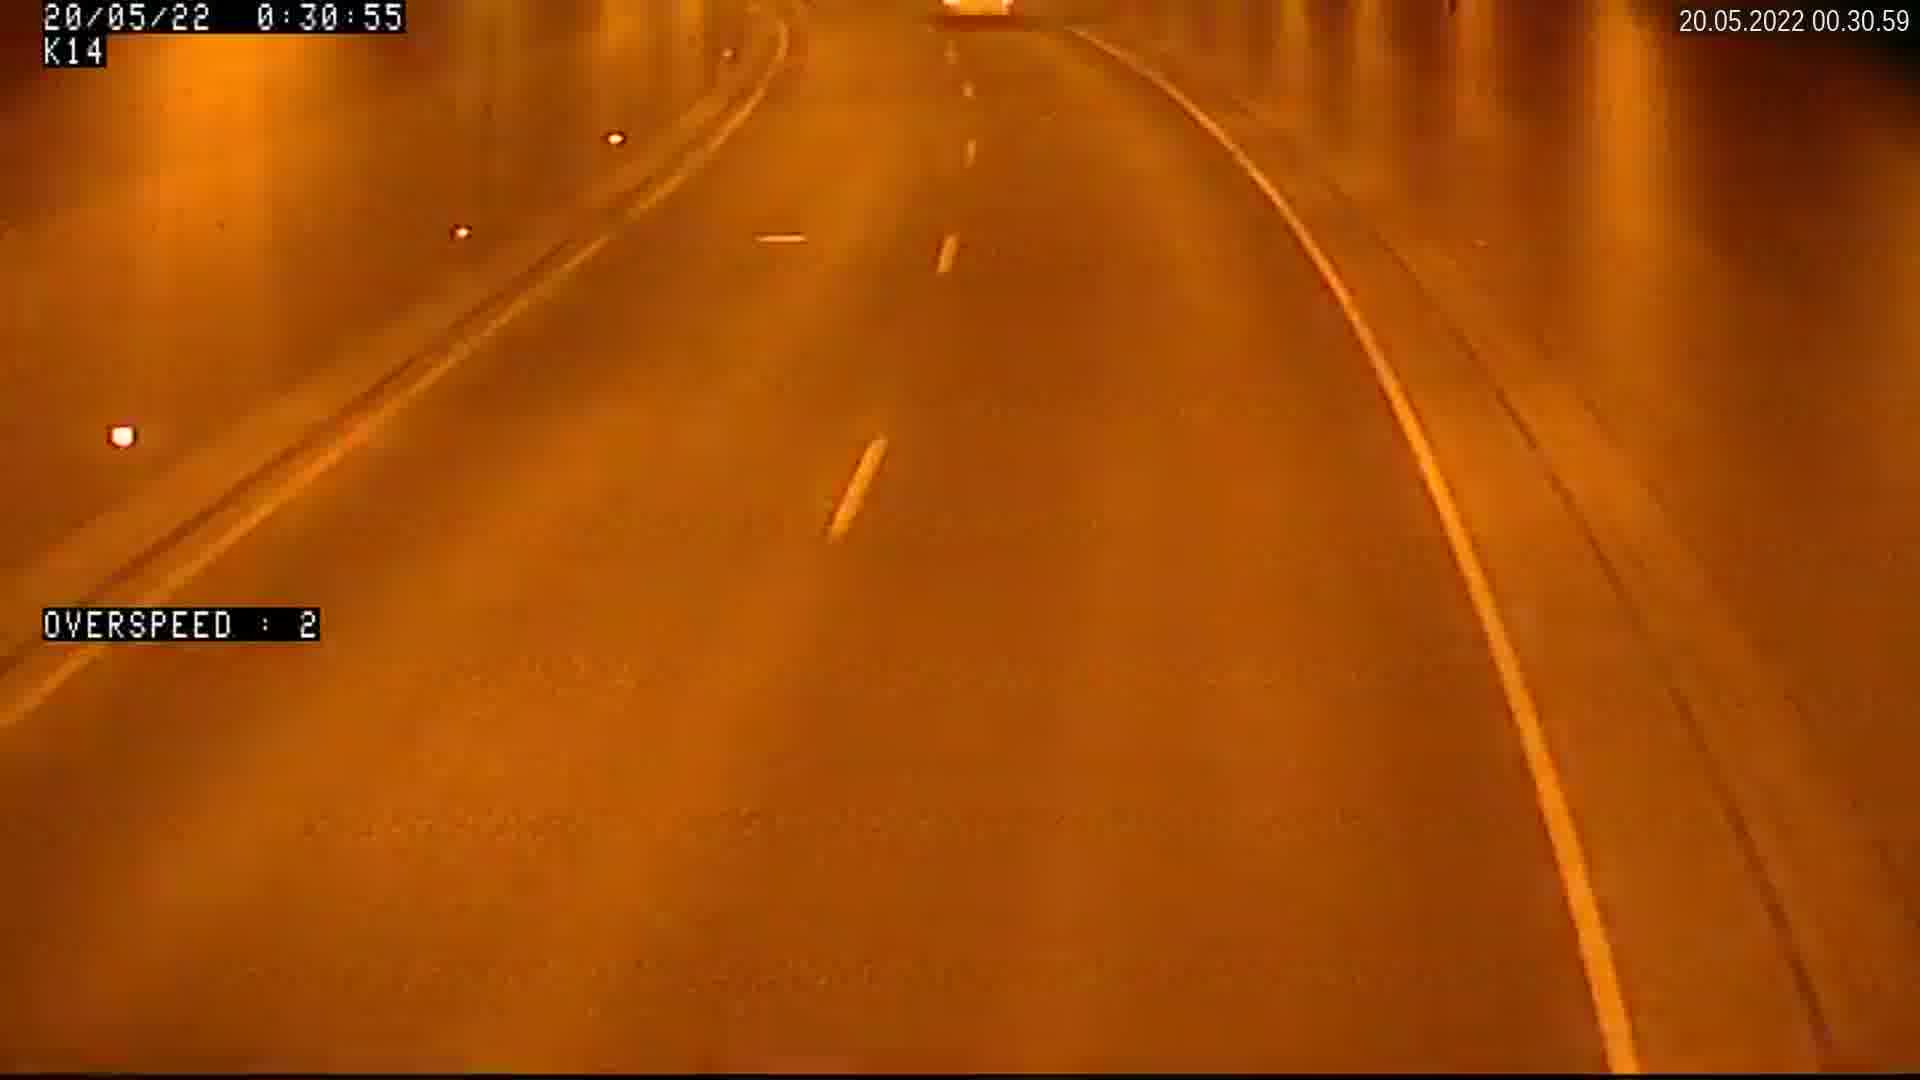 Mustamäele (tunnelis) - Estonia